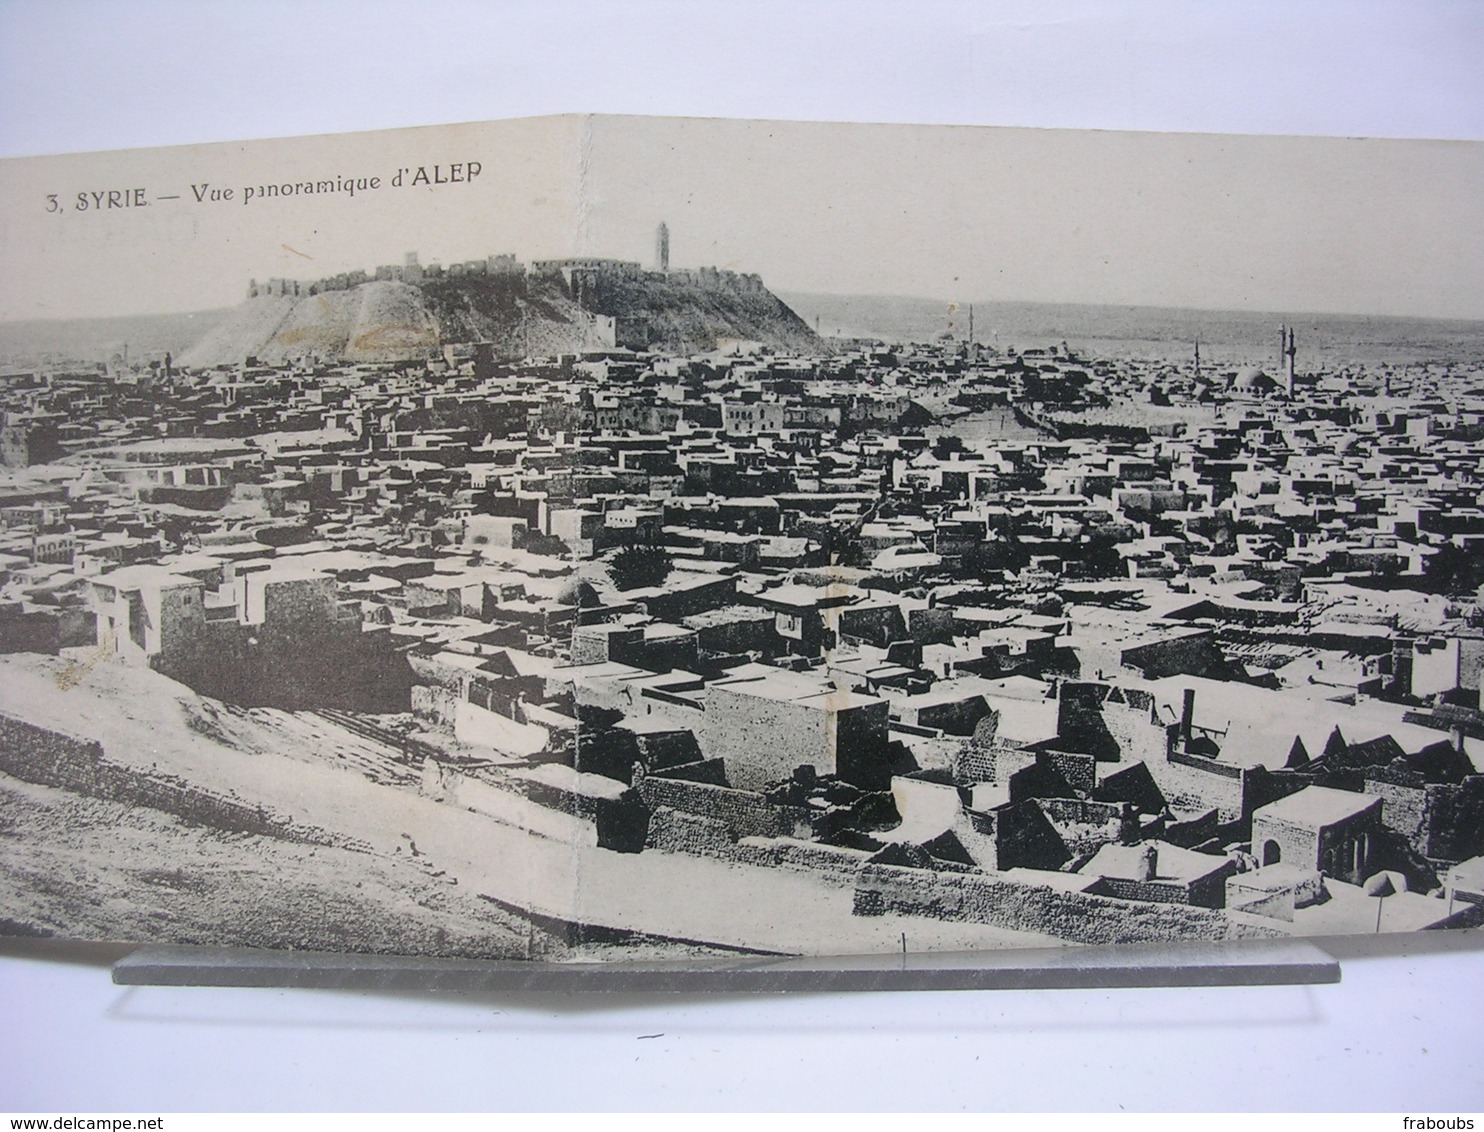 SYRIE - ALEP - VUE PANORAMIQUE (CARTE DOUBLE) + L'EMIR MOUDEHEM + CRUE DU KOUEK DU 6 FEVRIER 1922 - LOT DE 3 CARTES - Syria